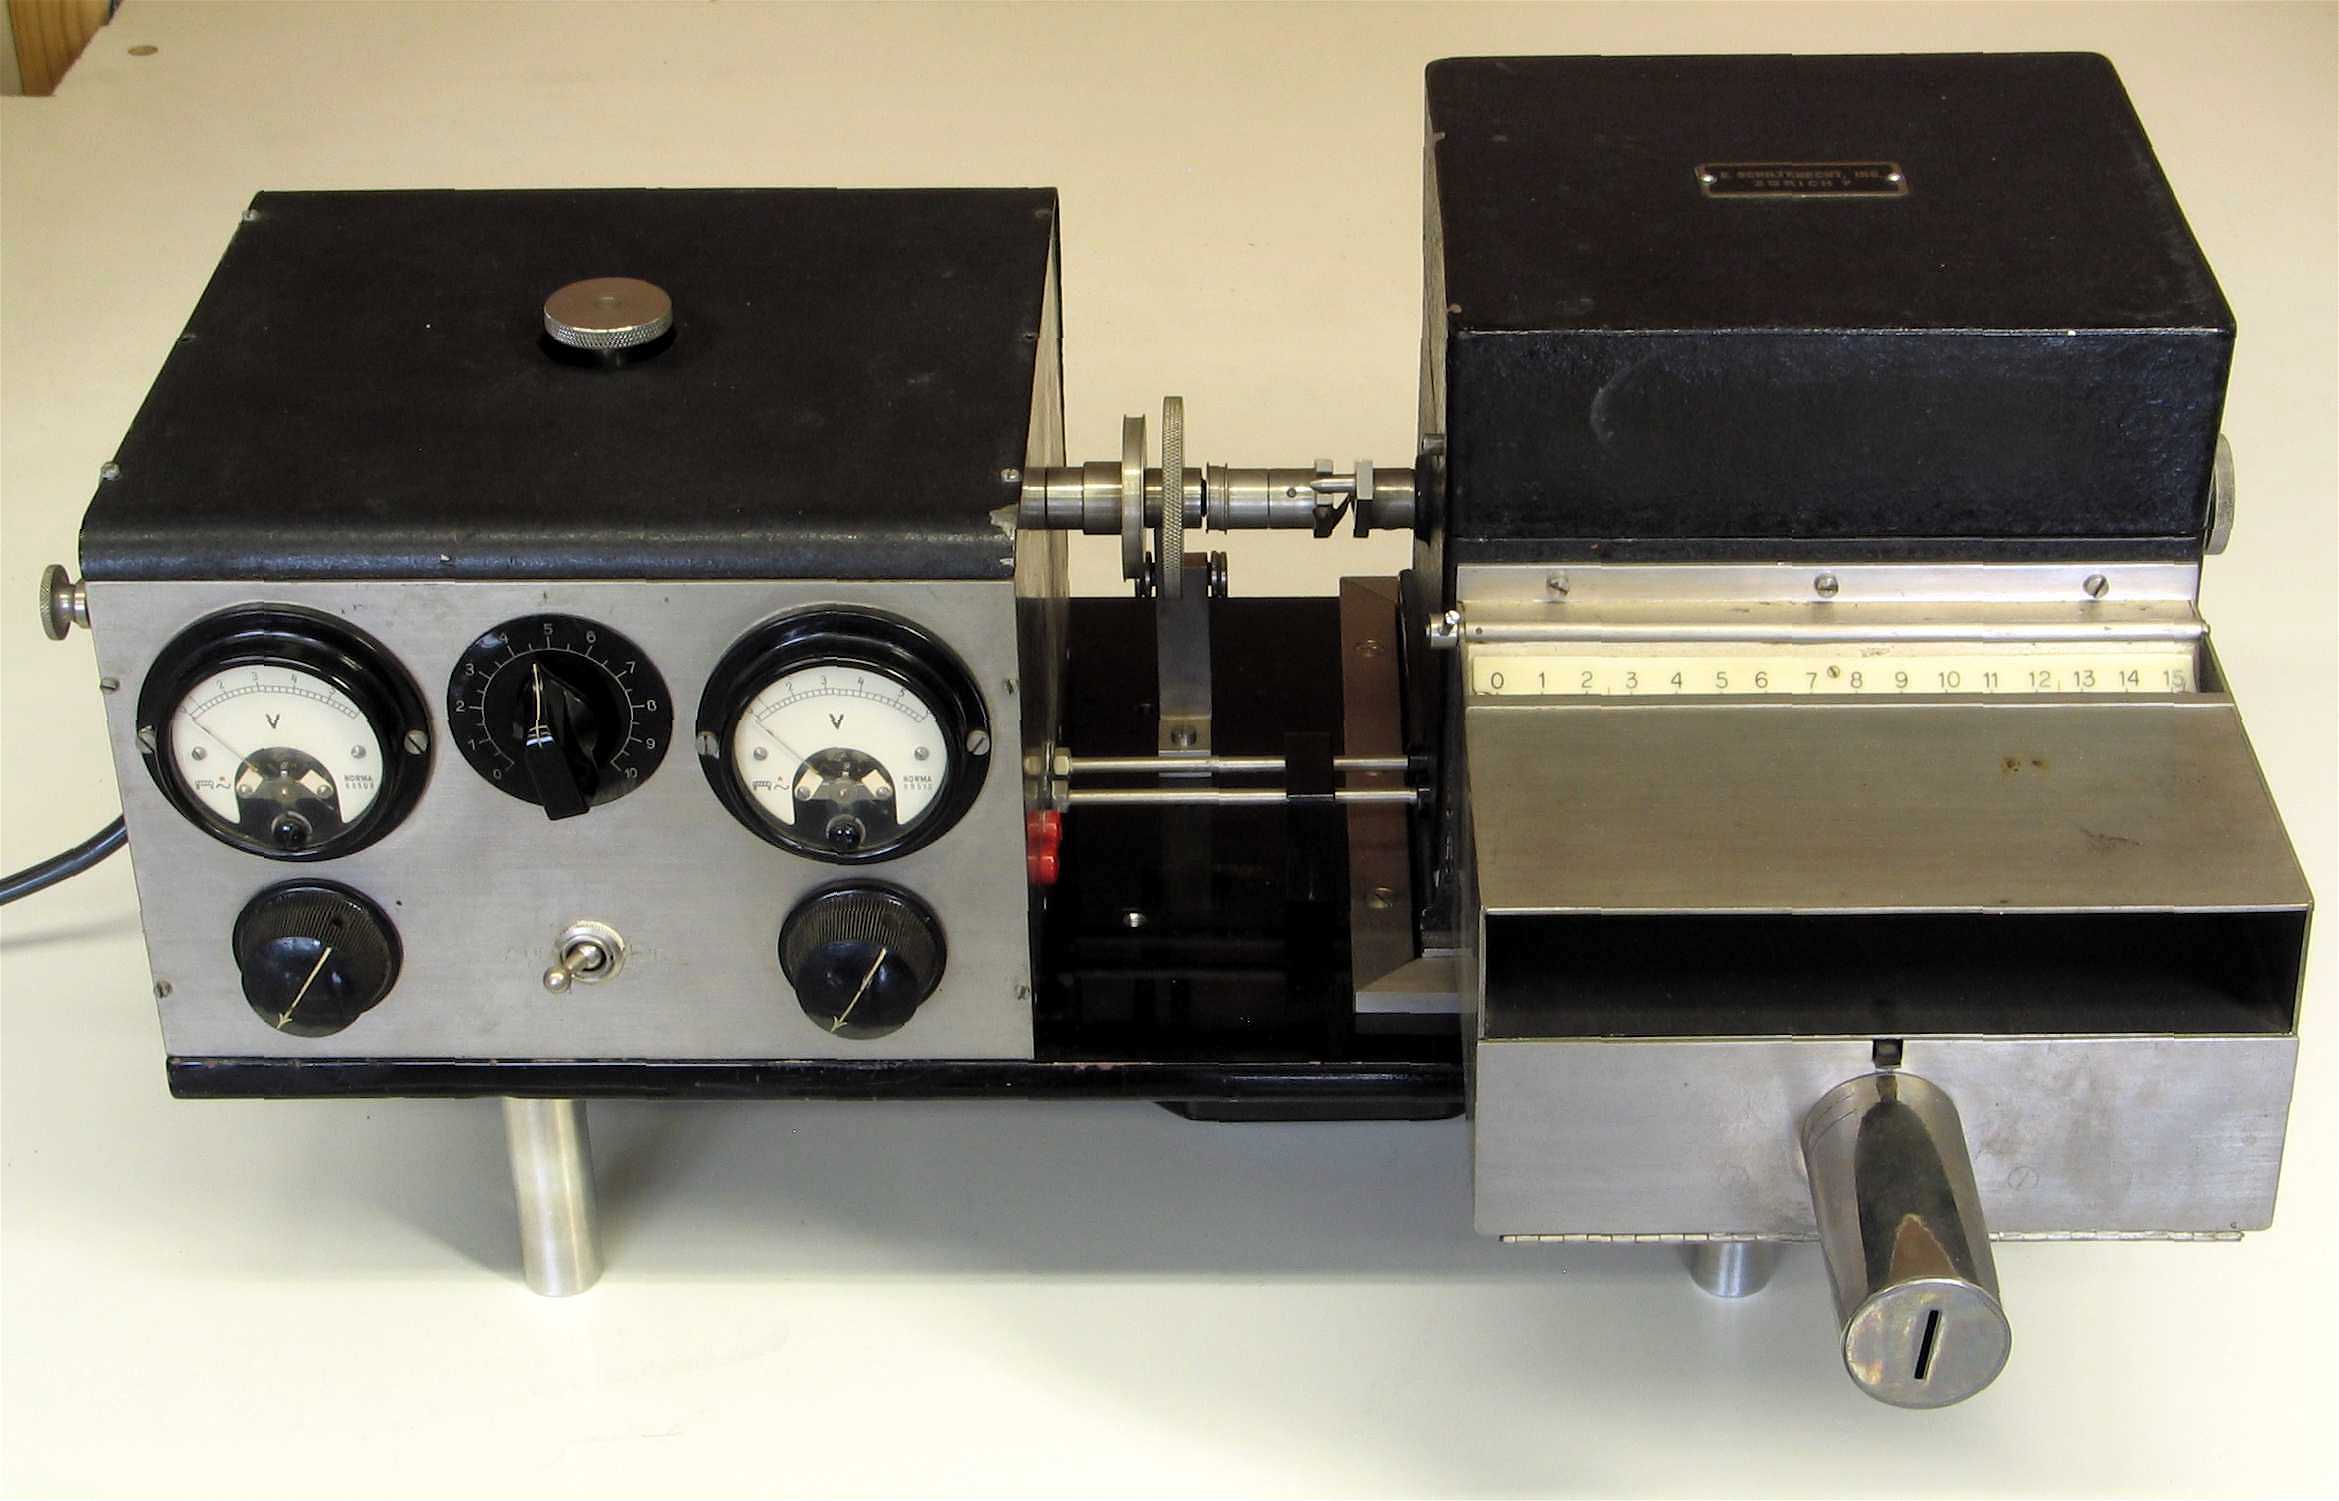 Enregistreur photographique à tambour
(partie d’un microphotomètre ou microdensitomètre)